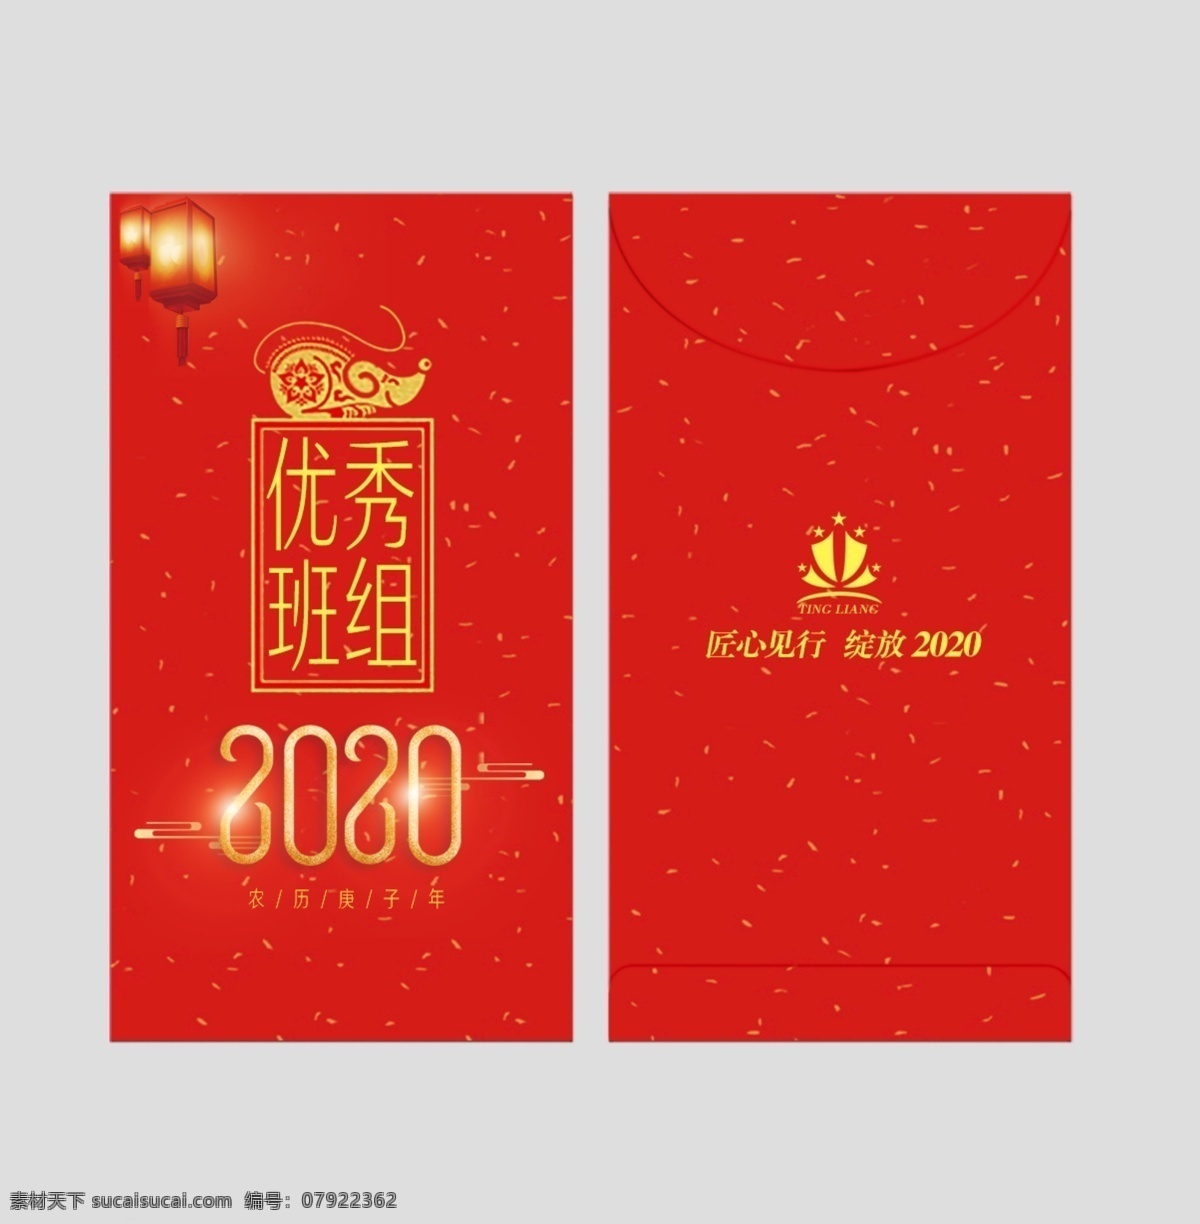 2020 年 红包 鼠年红包 企业红包 红包设计 学校红包 包装设计